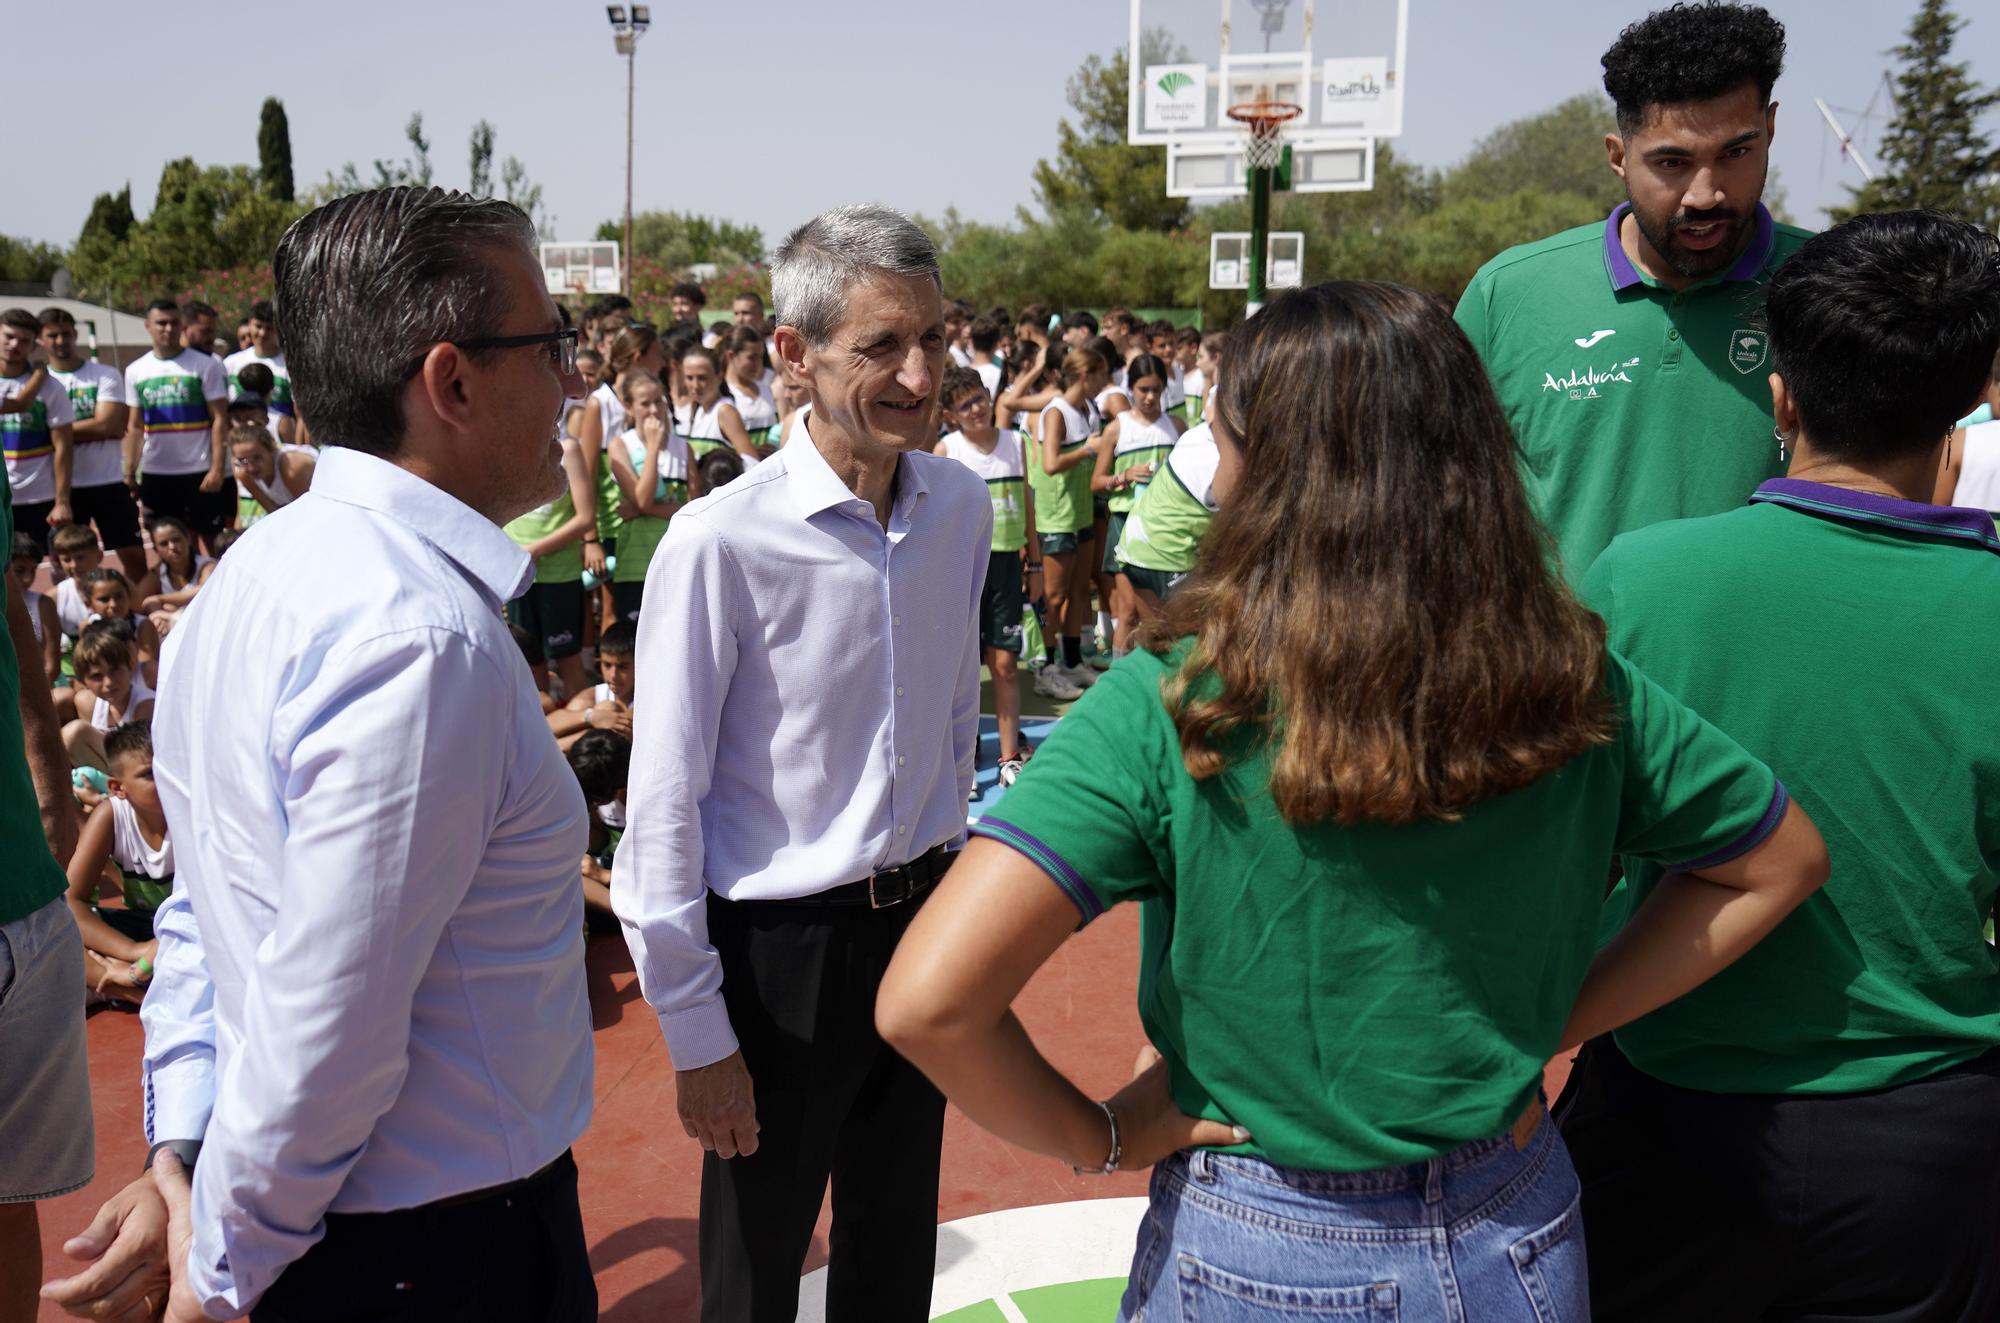 Augusto Lima, Carmen Ruiz y Salomé García visitan el Campus Baloncesto de Unicaja